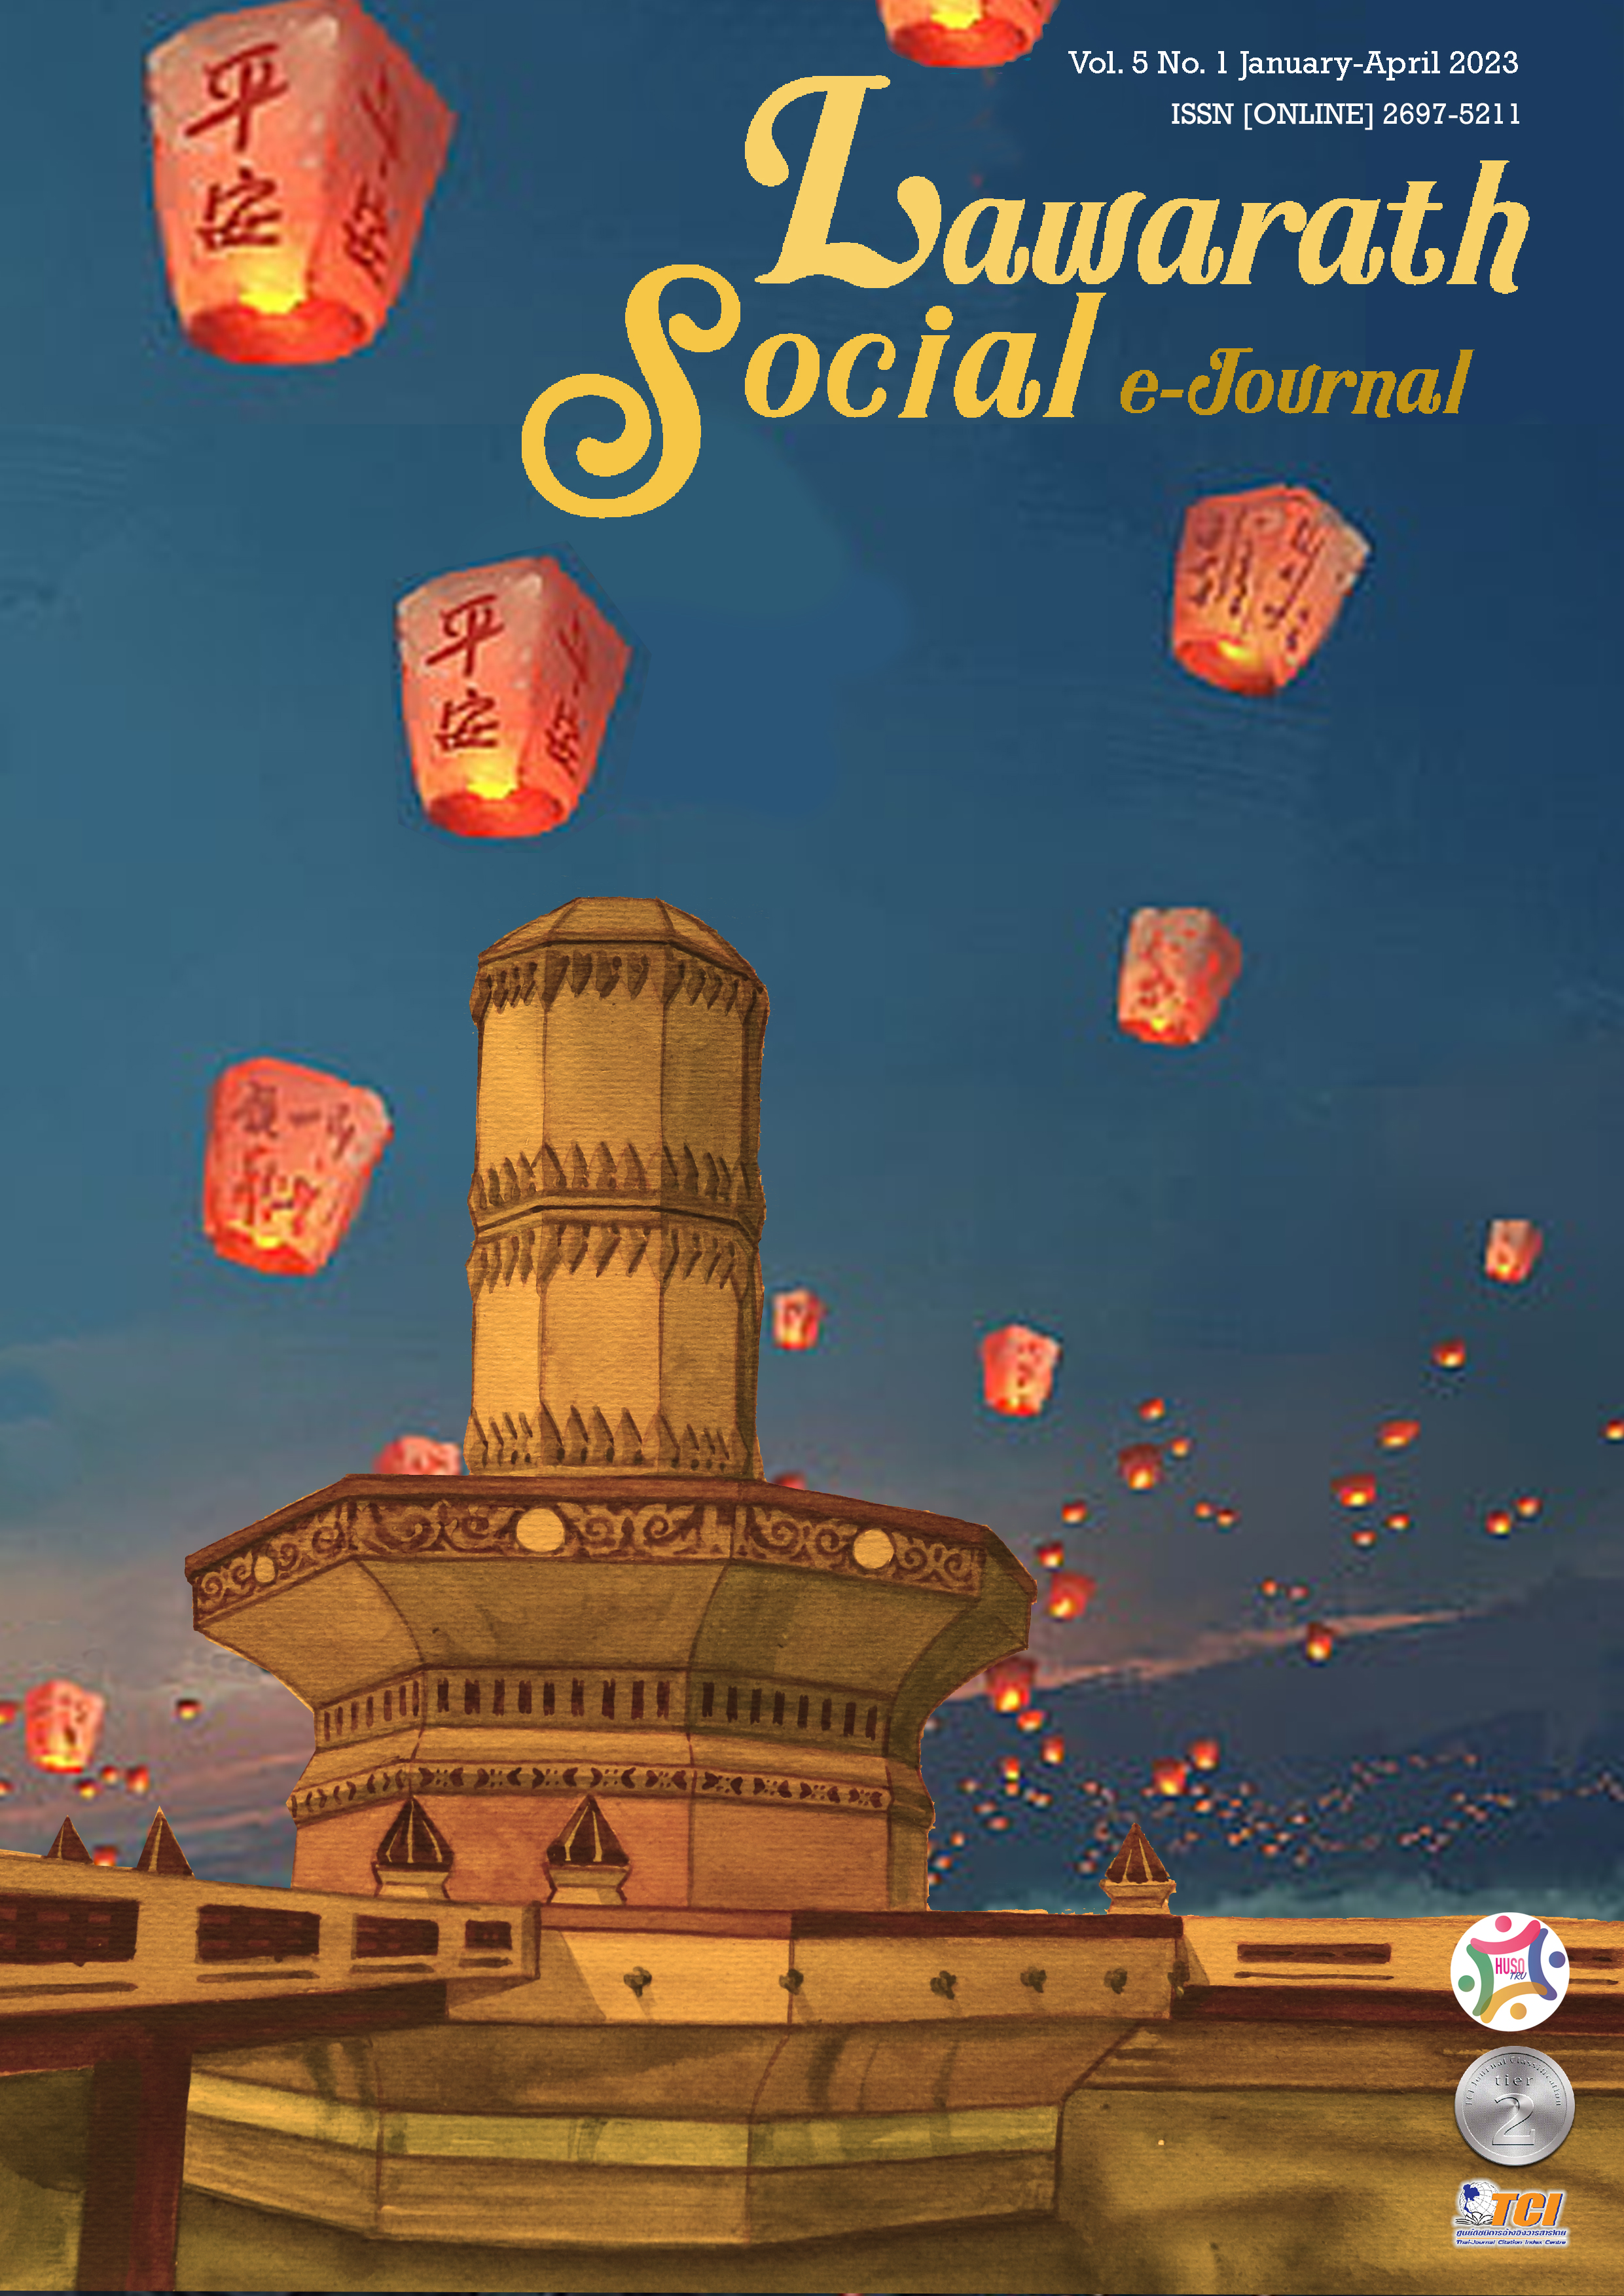 					View Vol. 5 No. 1 (2023): Lawarath Social E-Journal Vol. 5 No. 1 (January - April 2023)
				